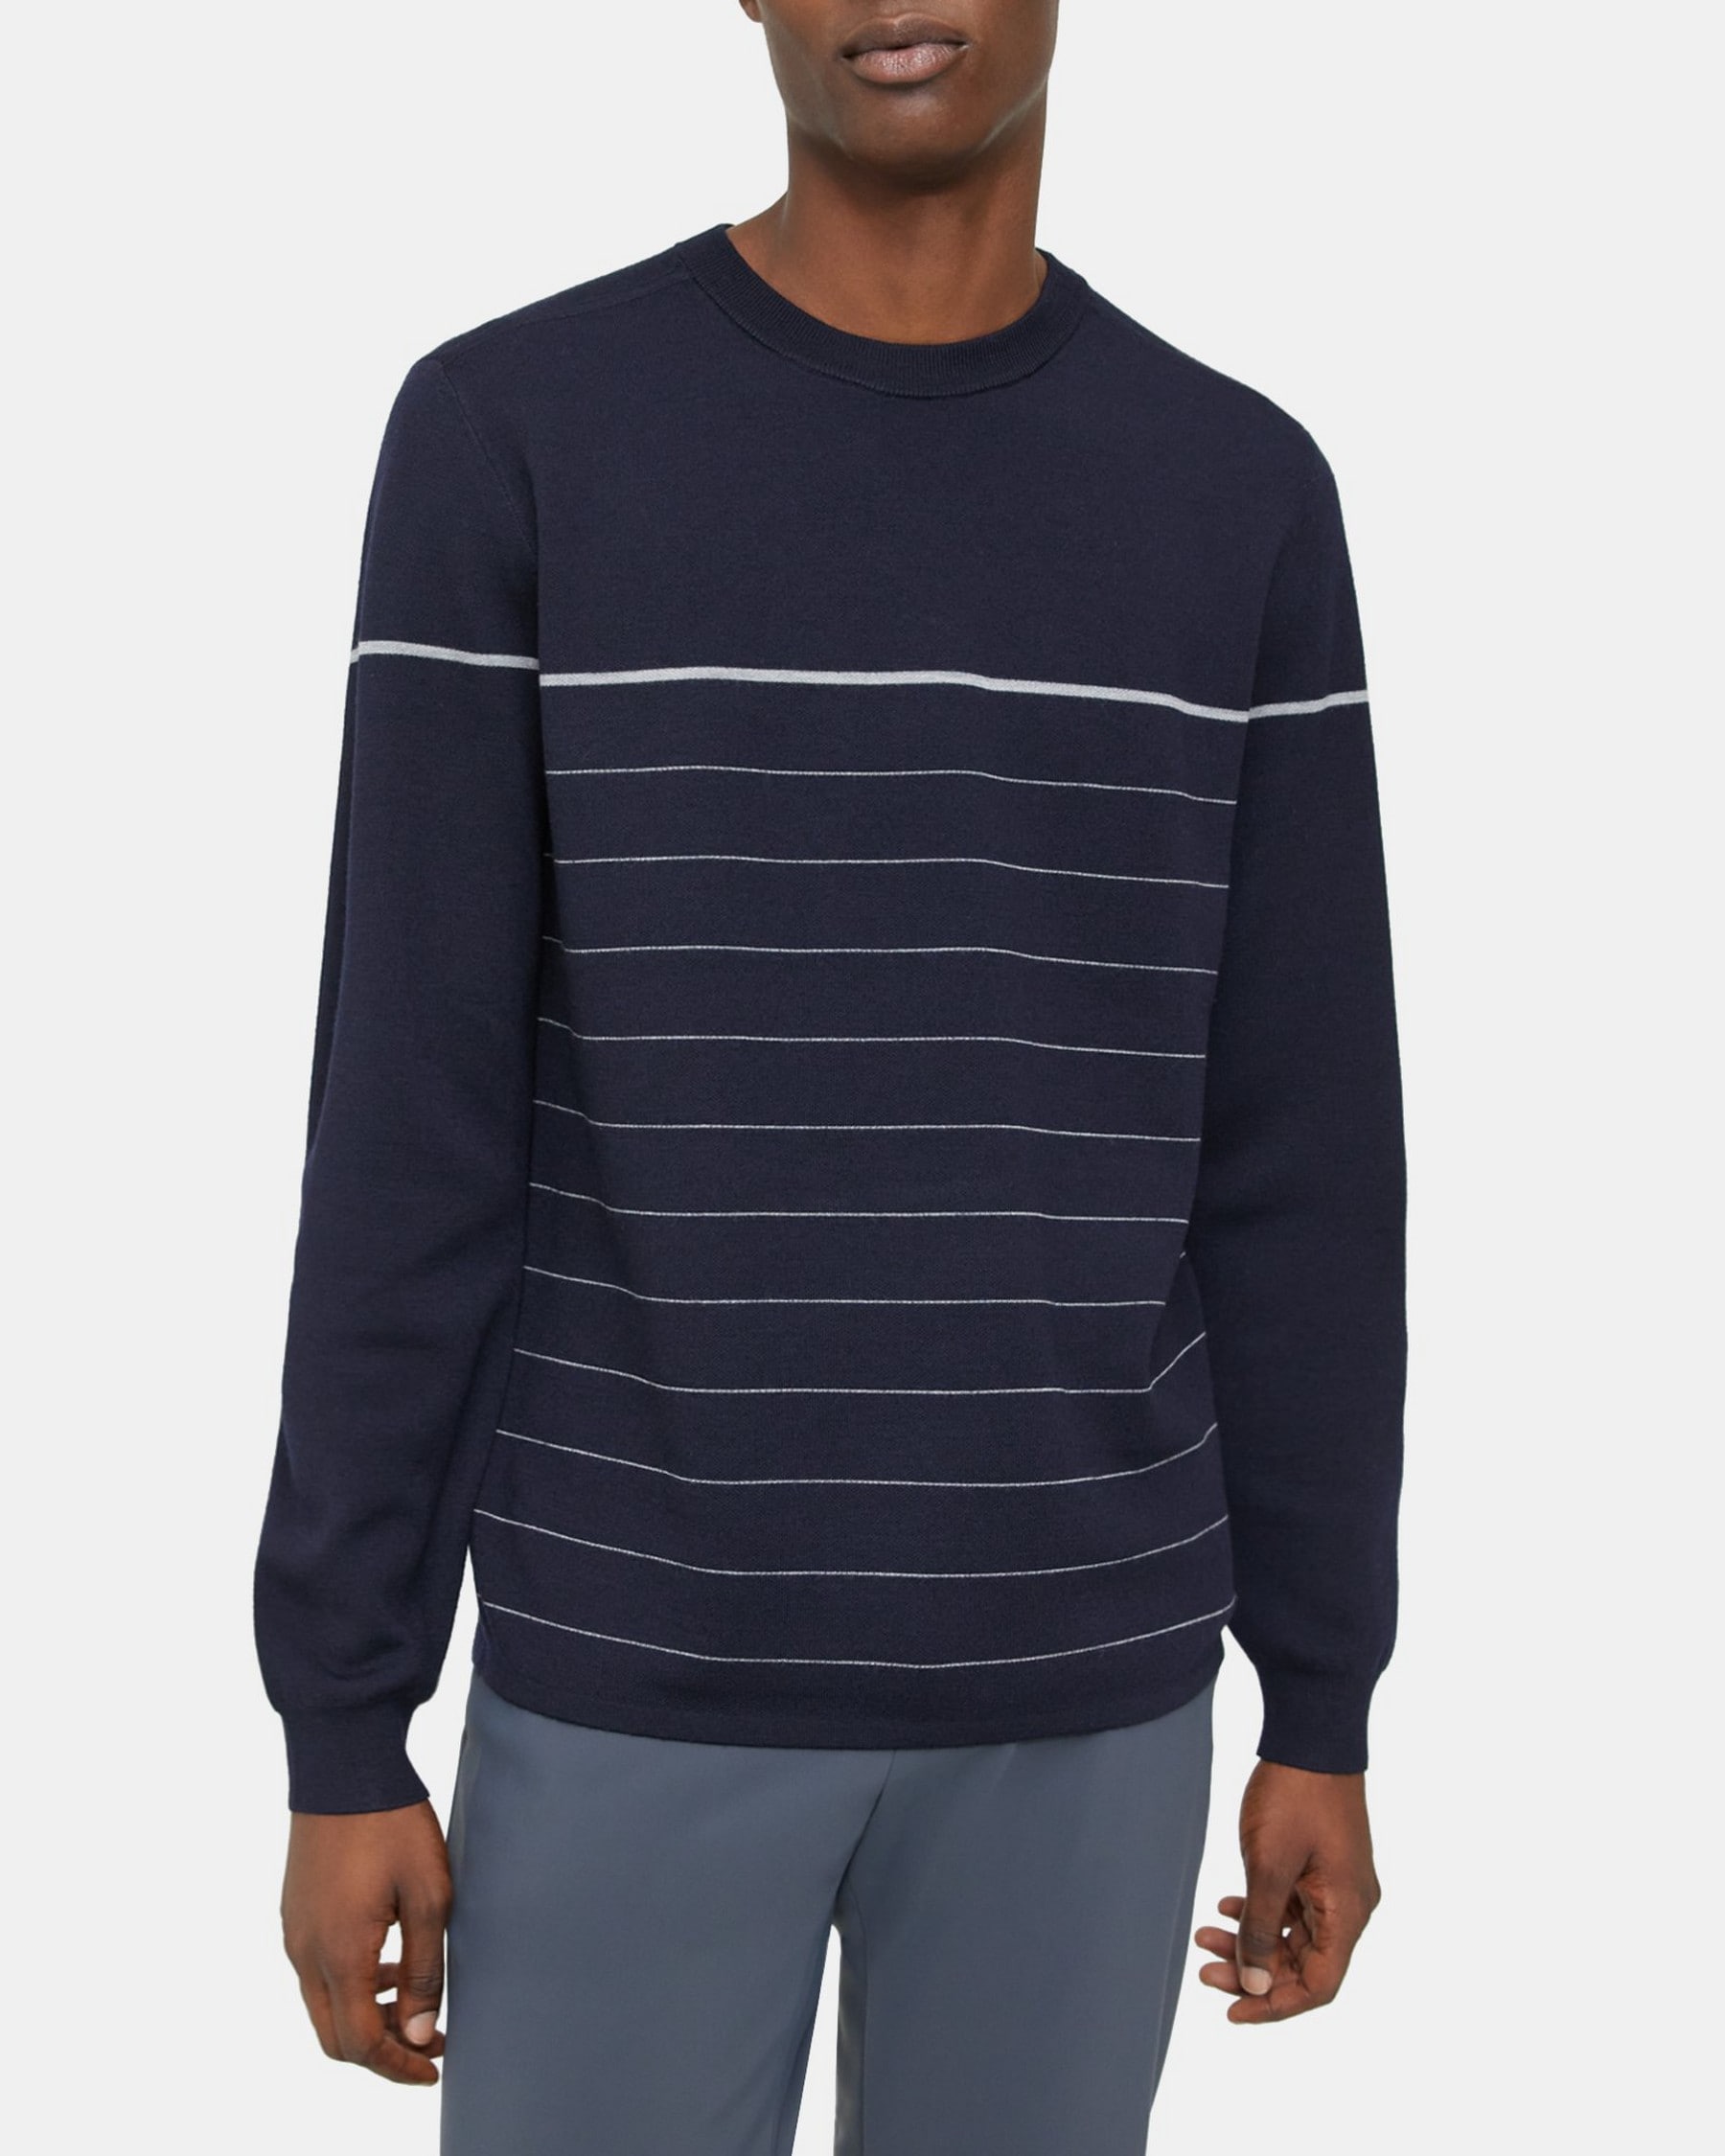 띠어리 Theory Crewneck Sweater in Merino Wool,BALTIC/COOL HEATHER GREY